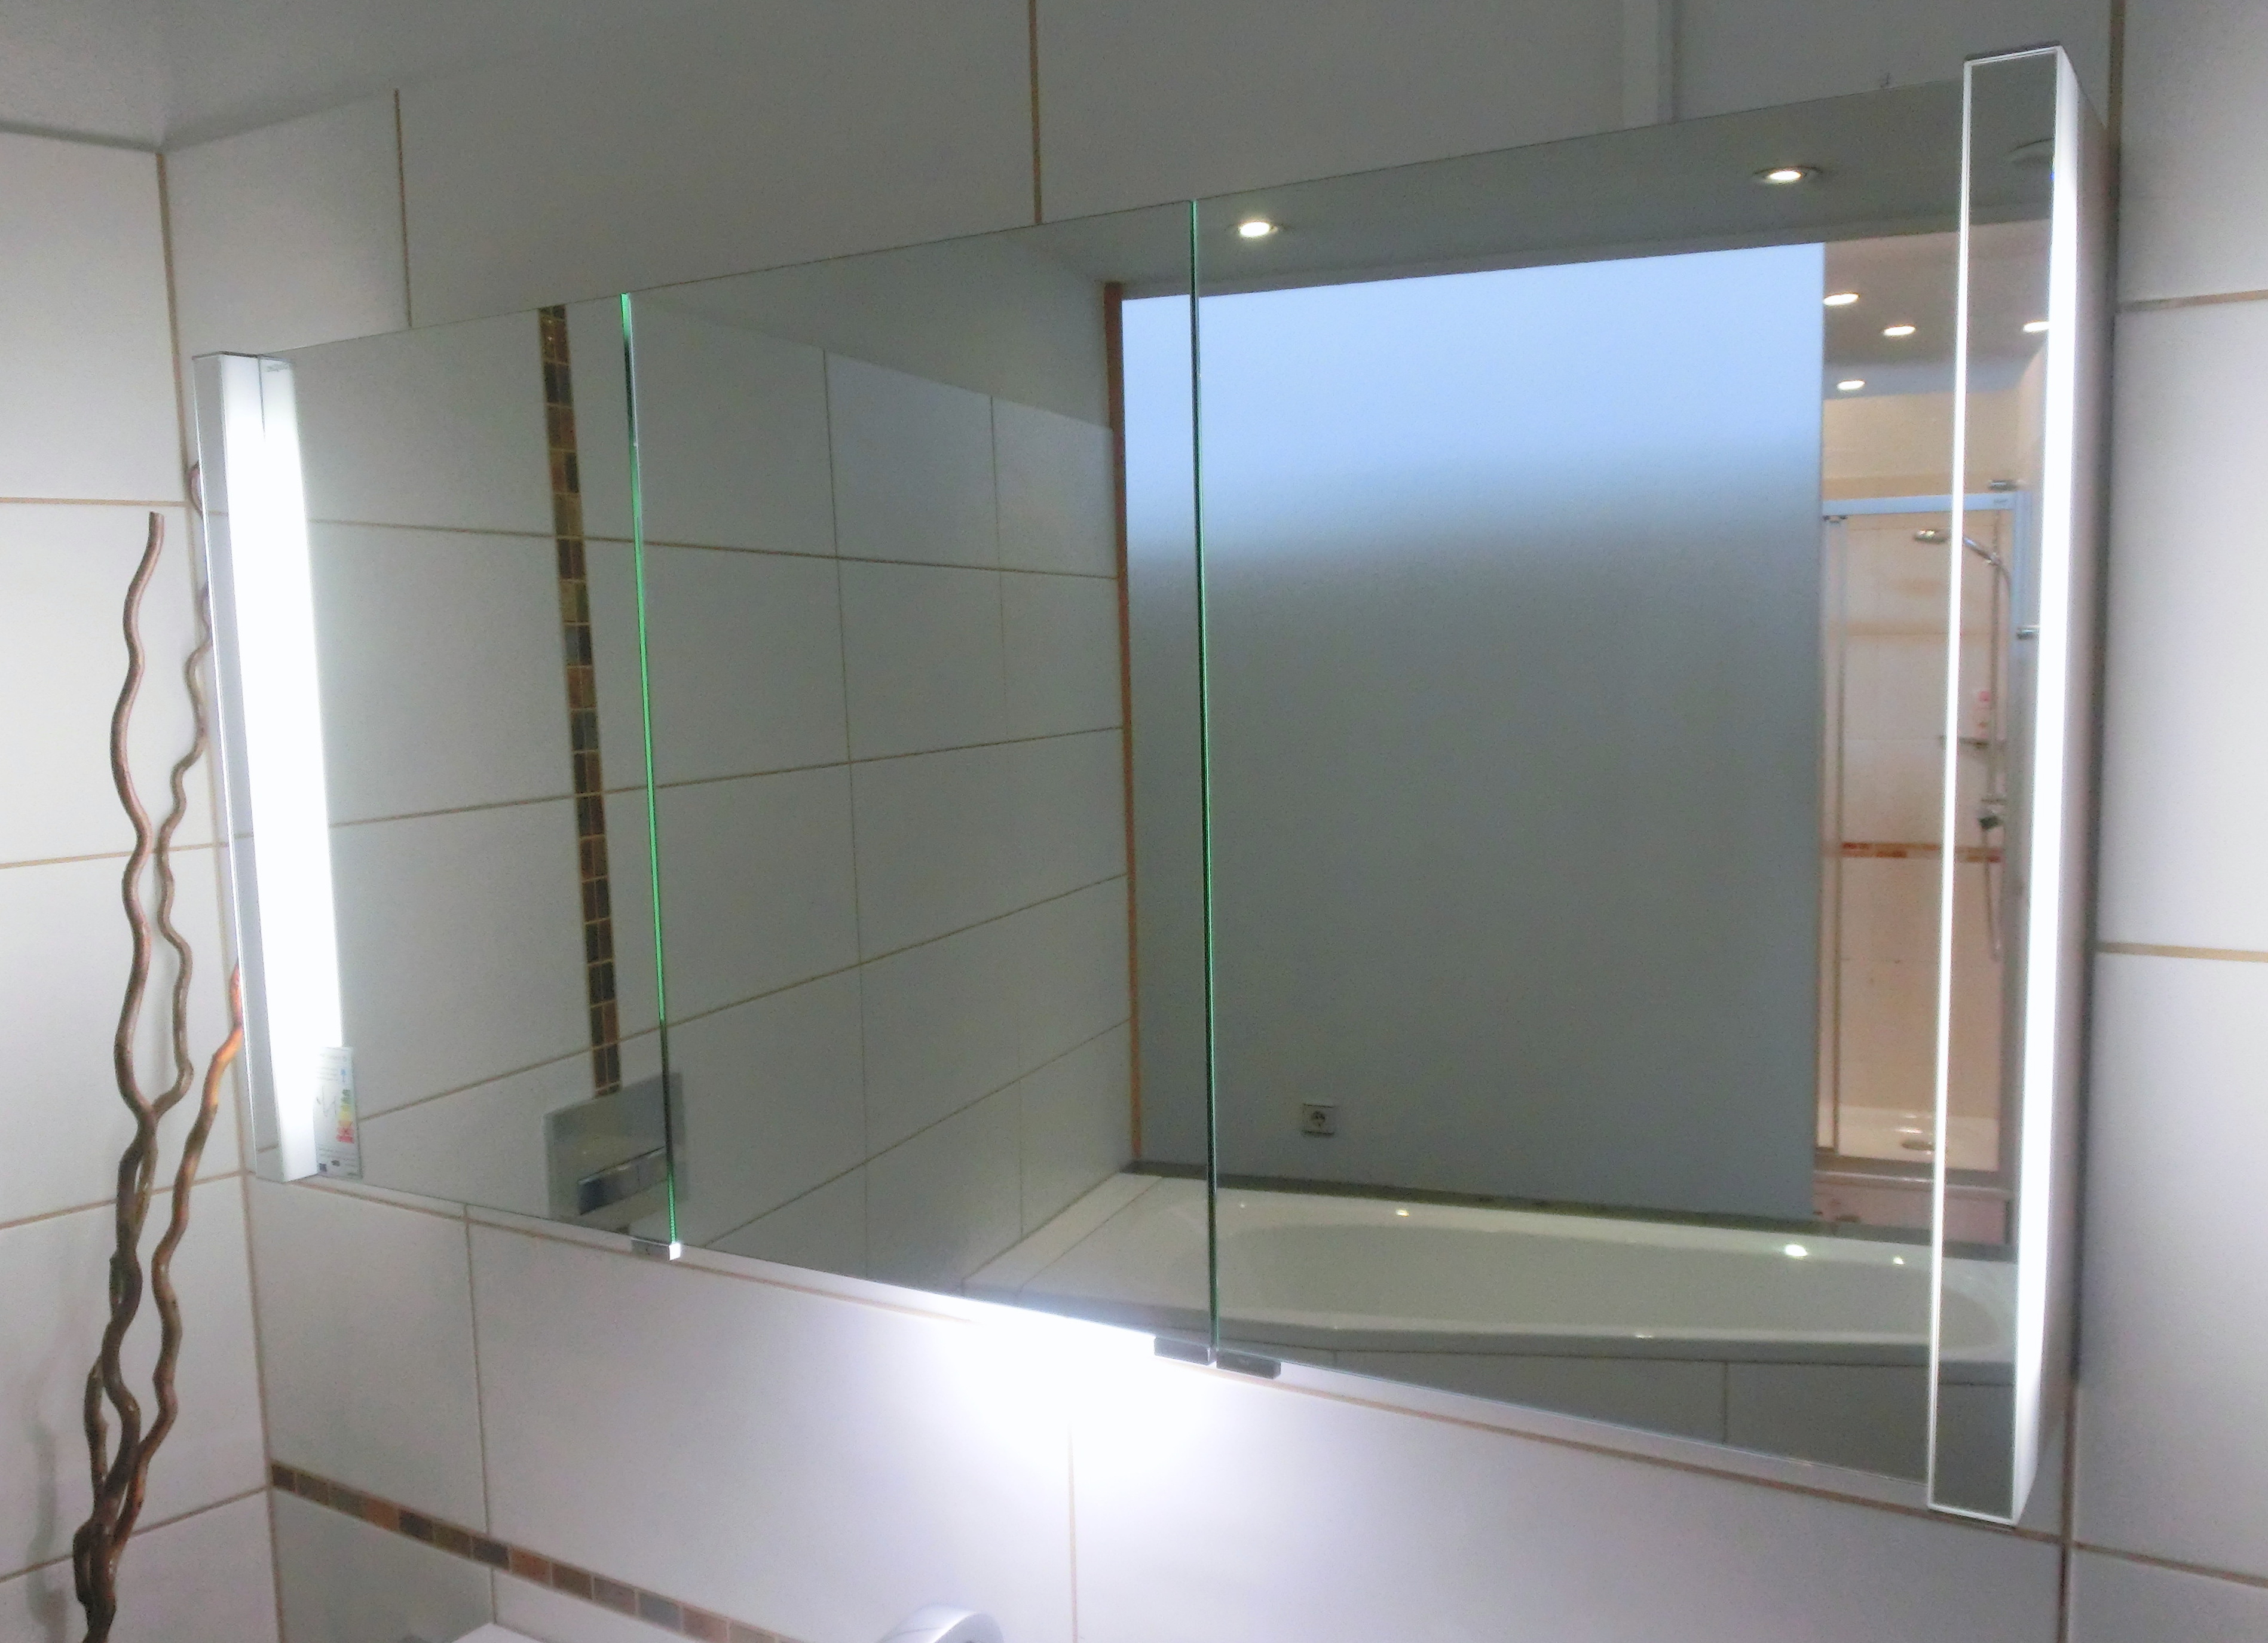 Burgbad Bel Spiegelschrank 120cm mit vertikaler LED-Beleuchtung und Waschtischbeleuchtung, SPFW120R 